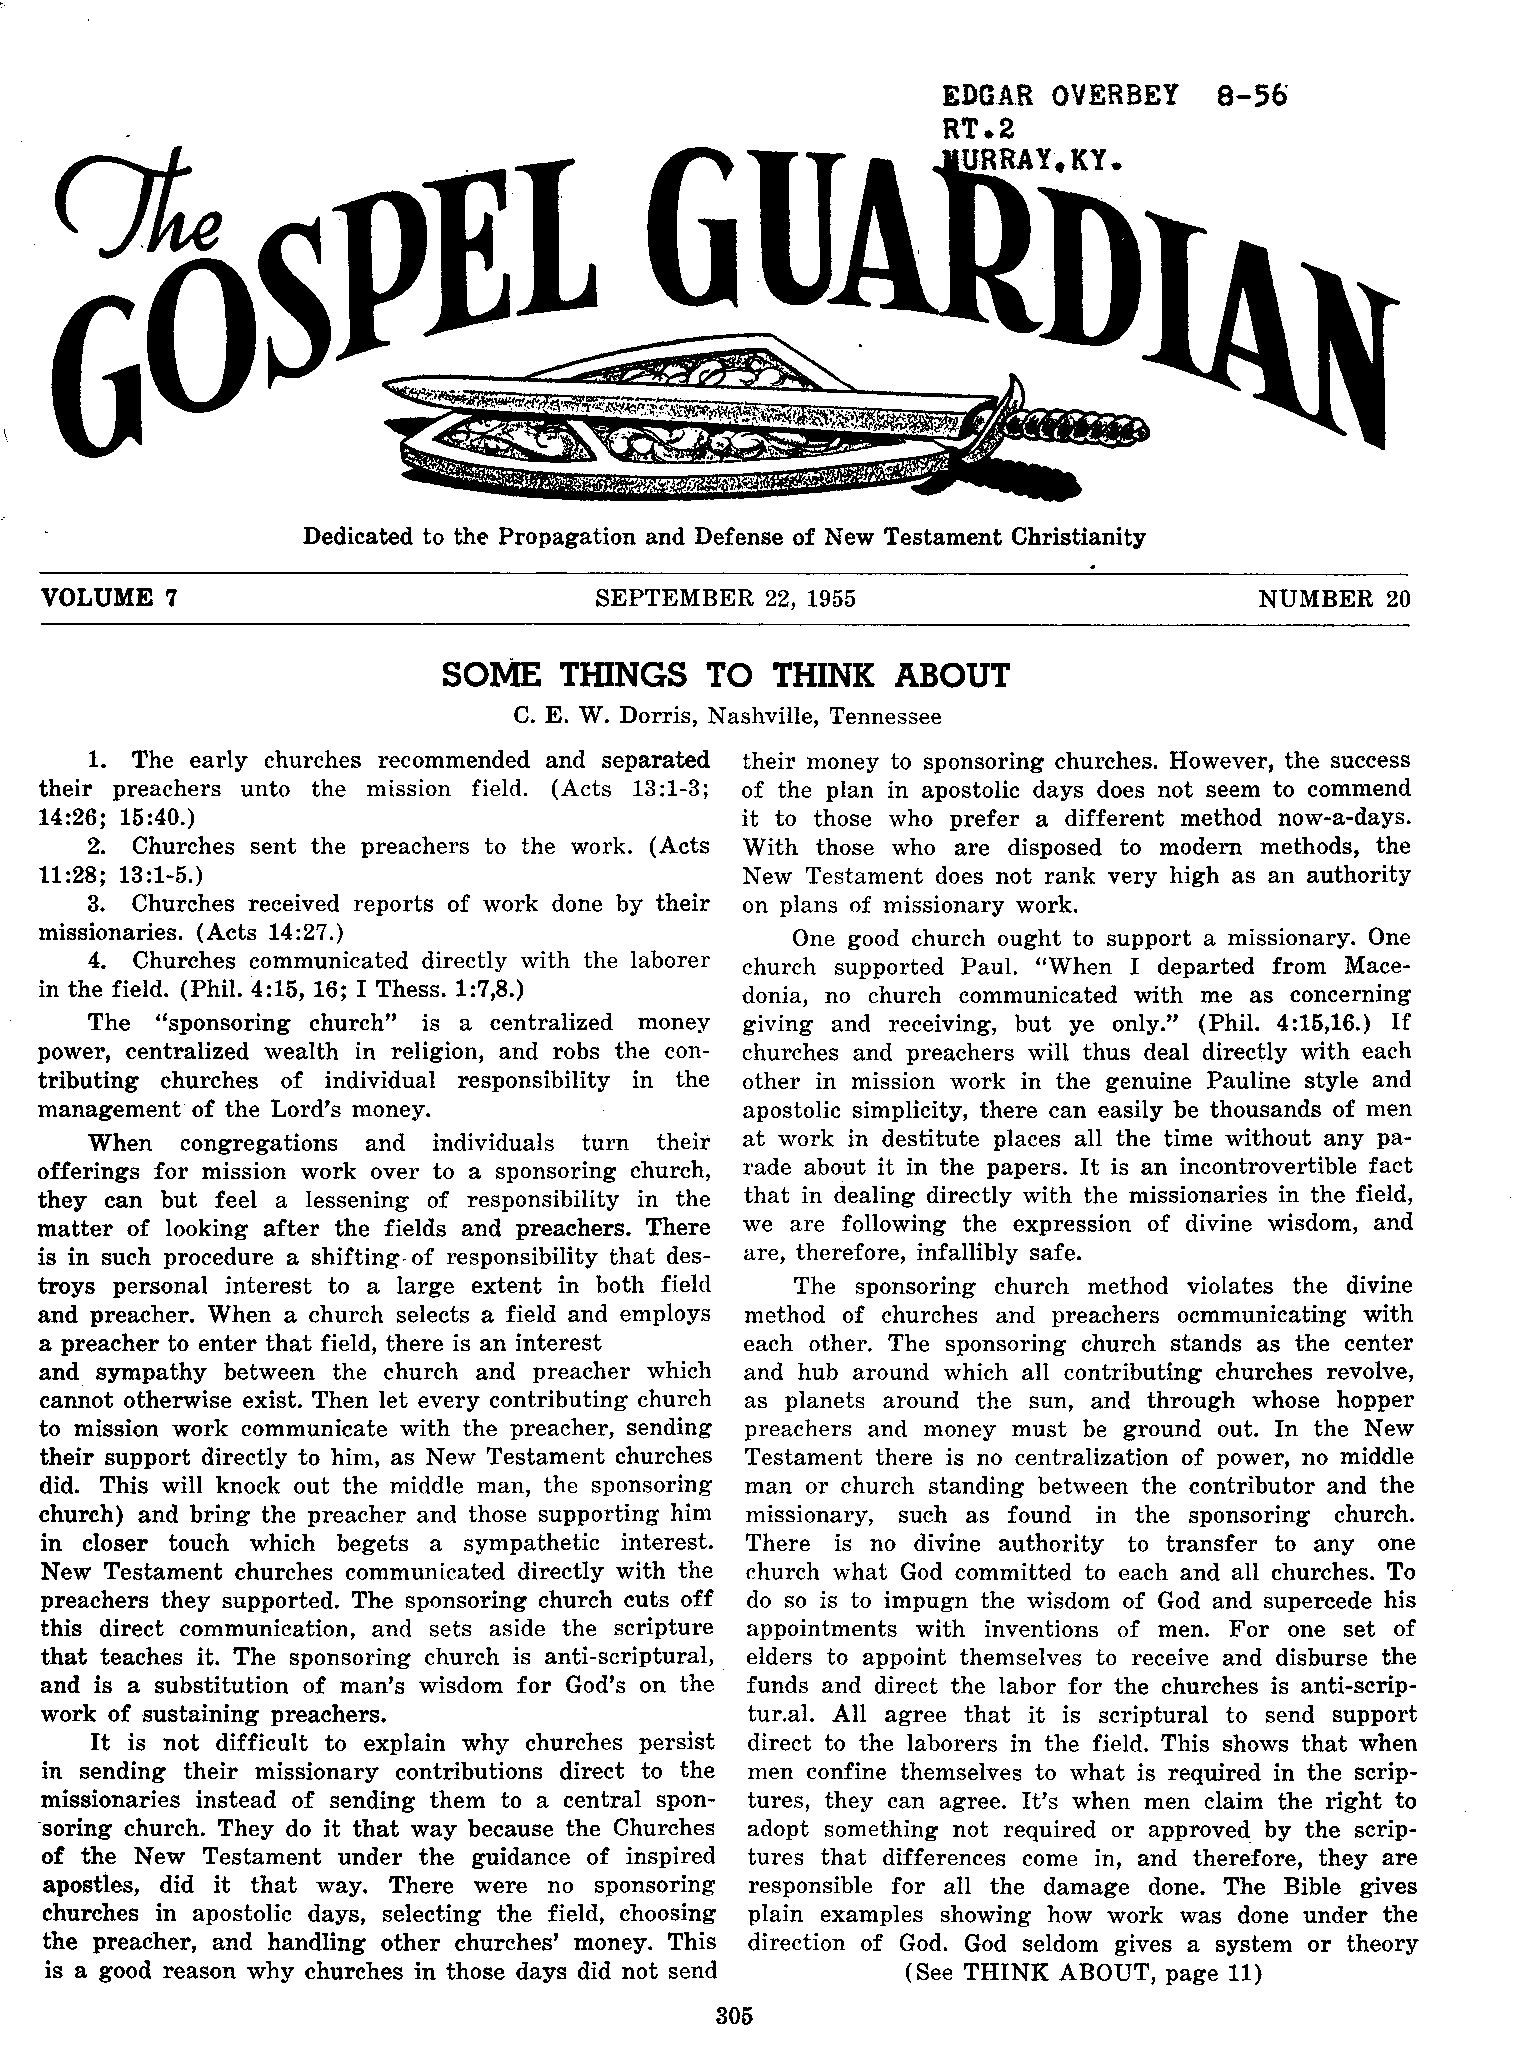 Gospel Guardian Original: Vol.7 No.20 Pg.1